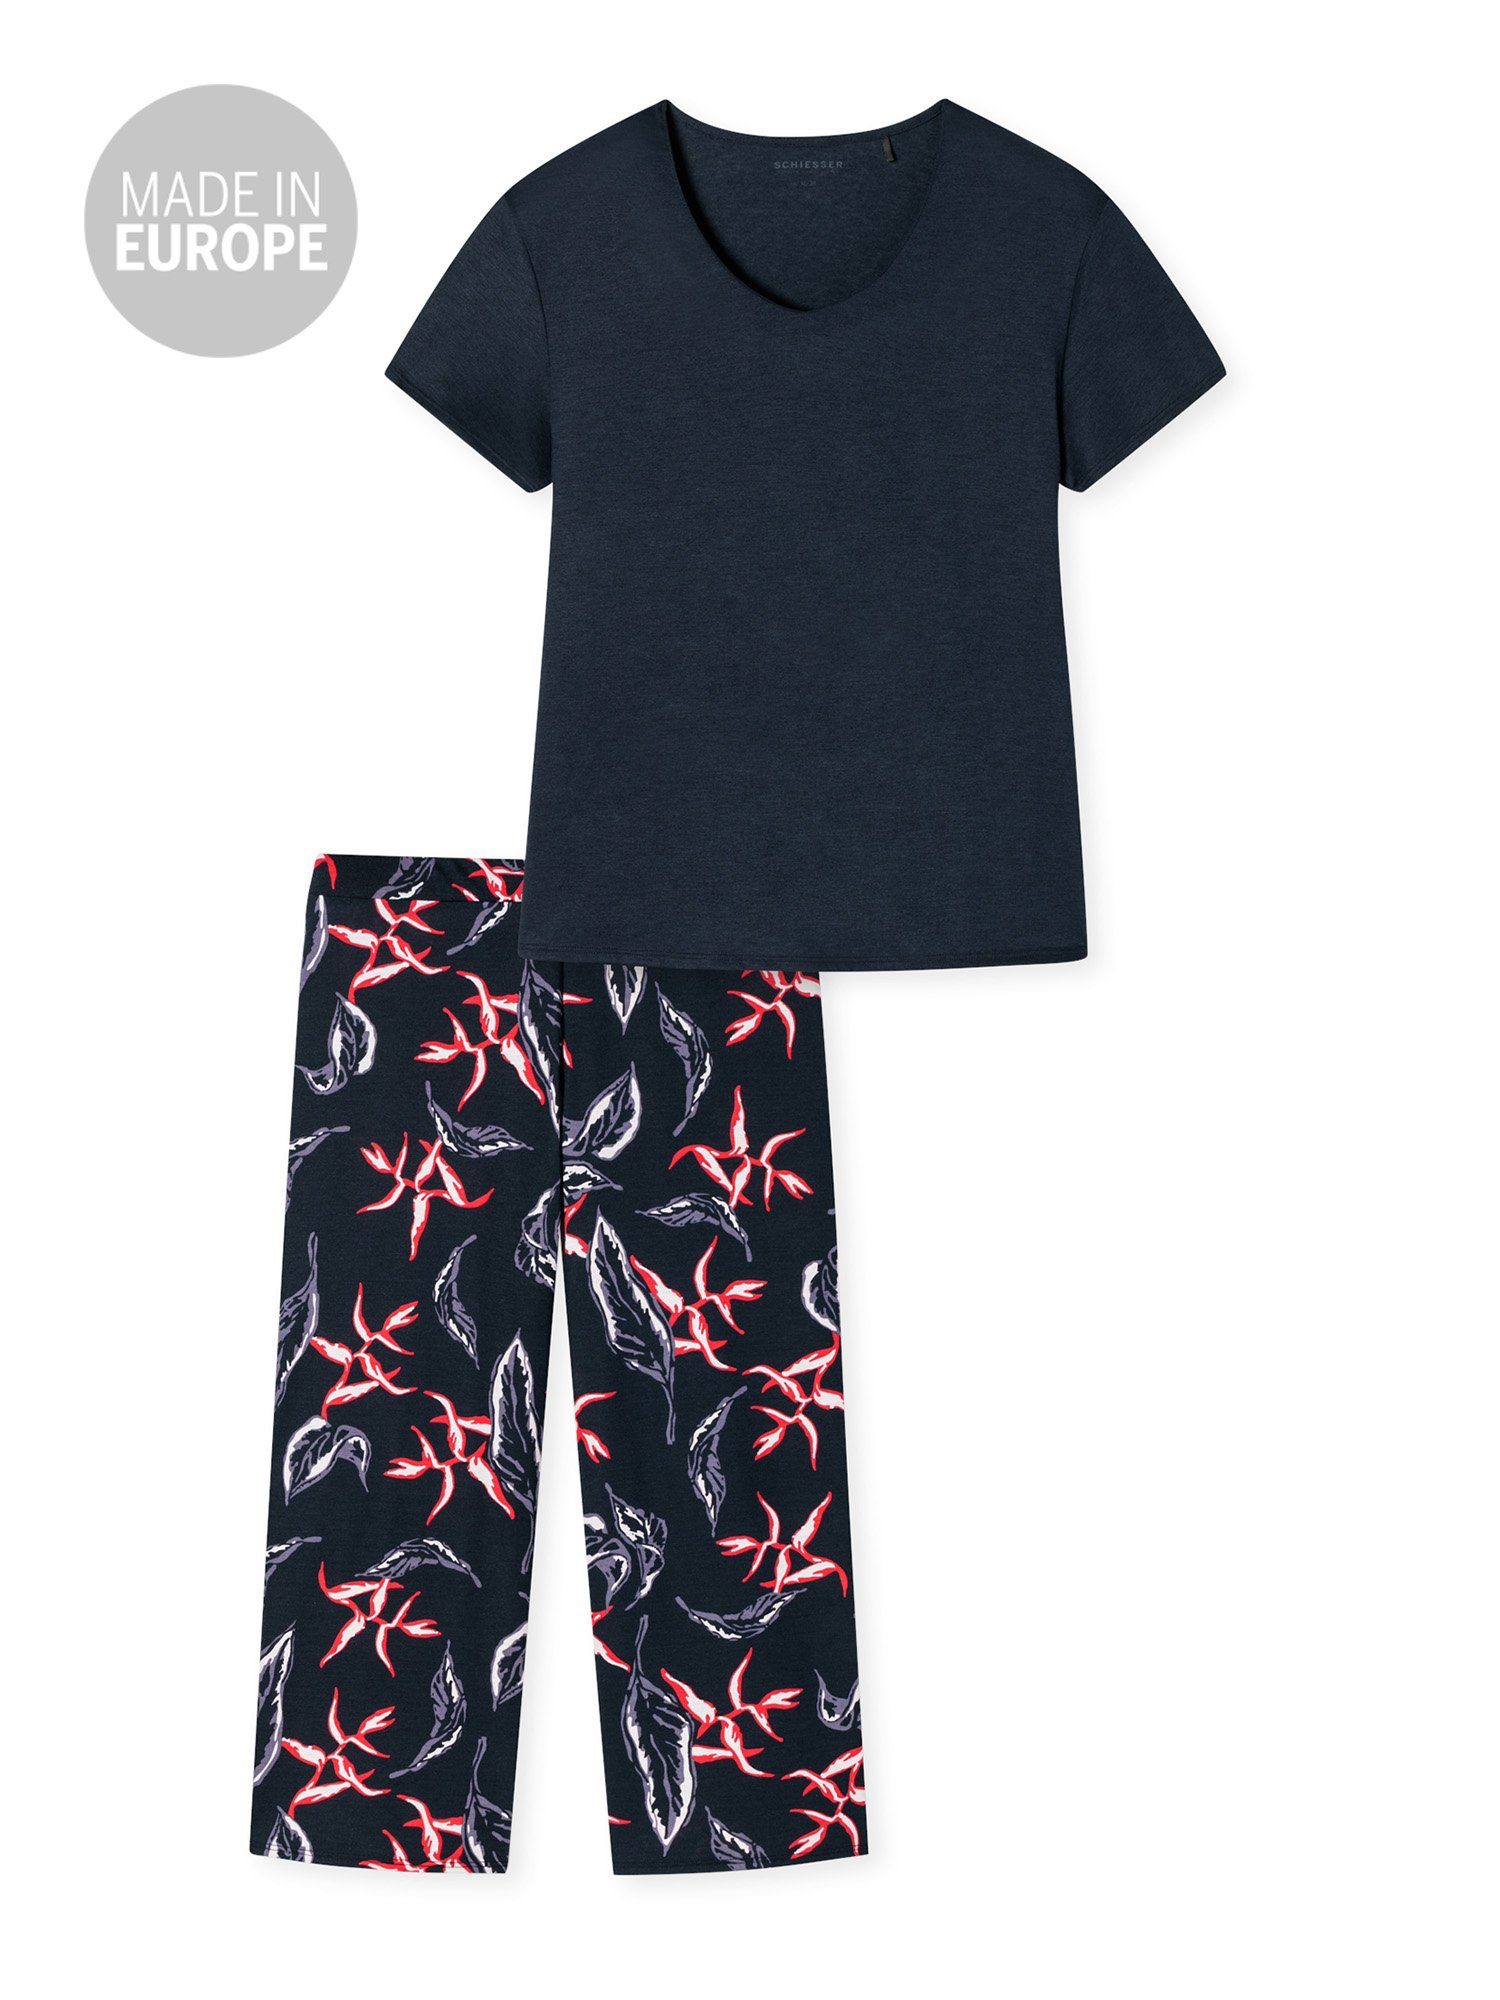 Nightwear Contemporary Pyjama multicolor 1 Schiesser